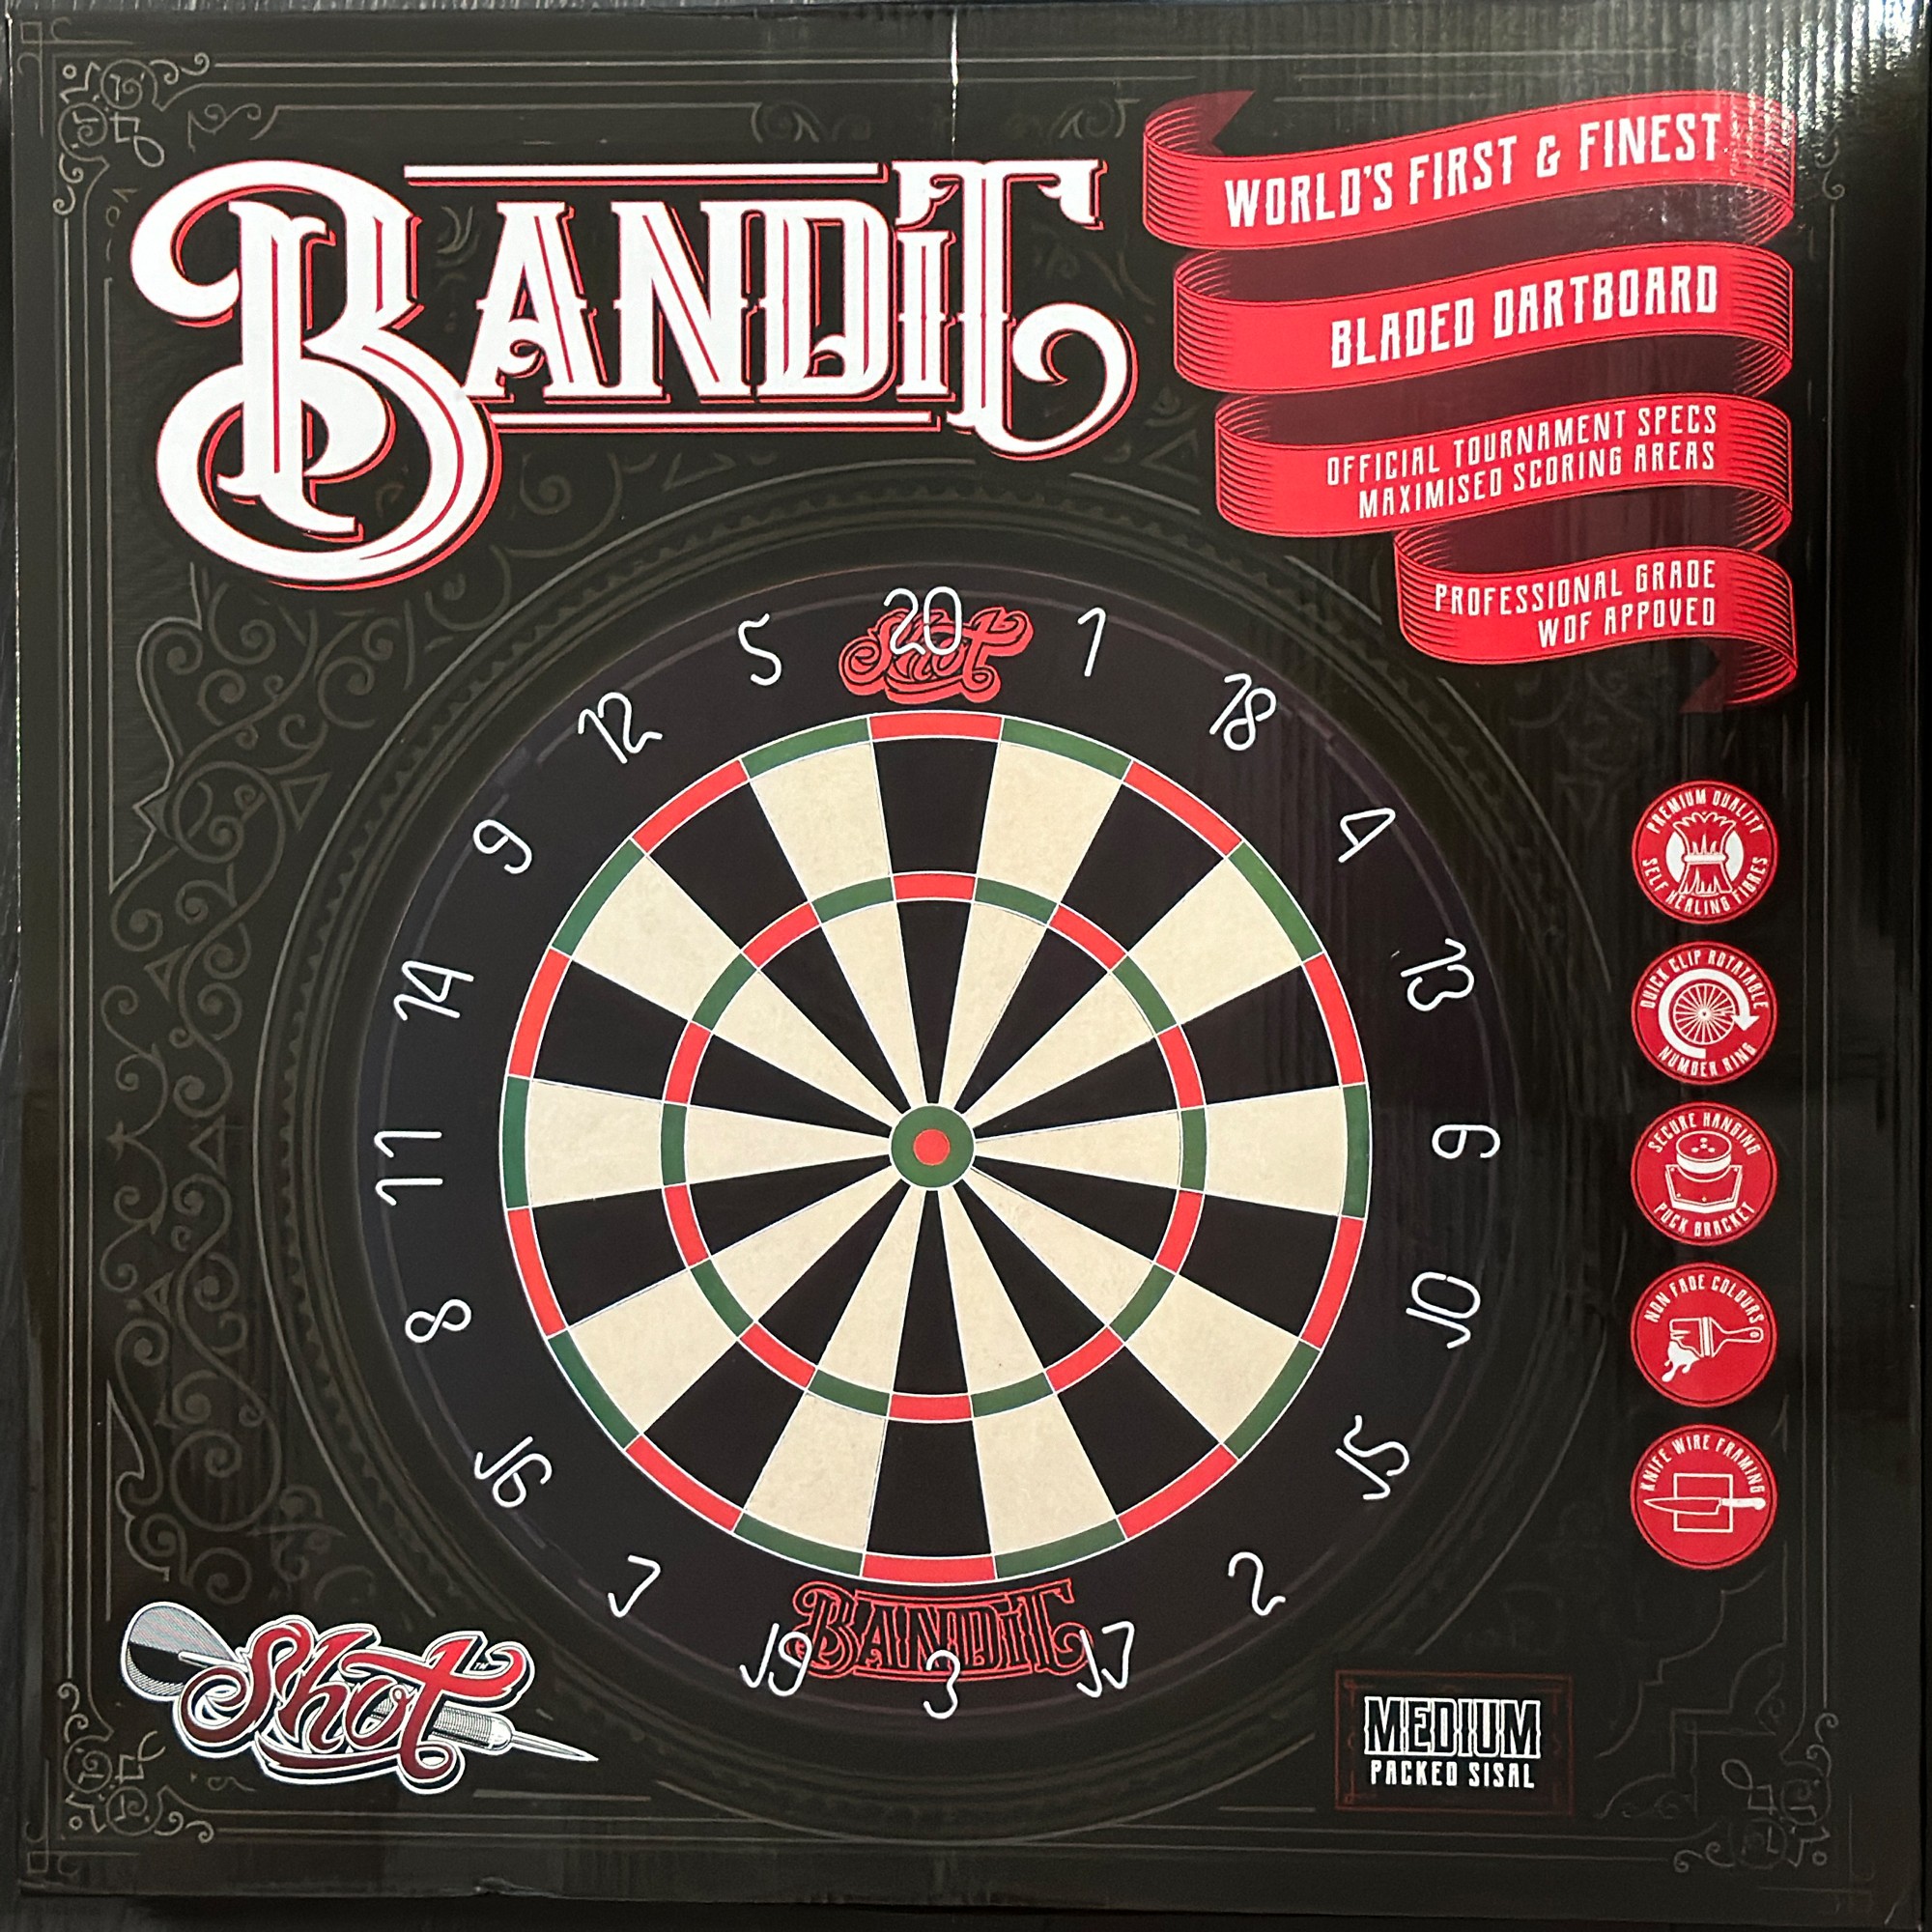 Shot Bandit Dartboard mit der weißen Spinne